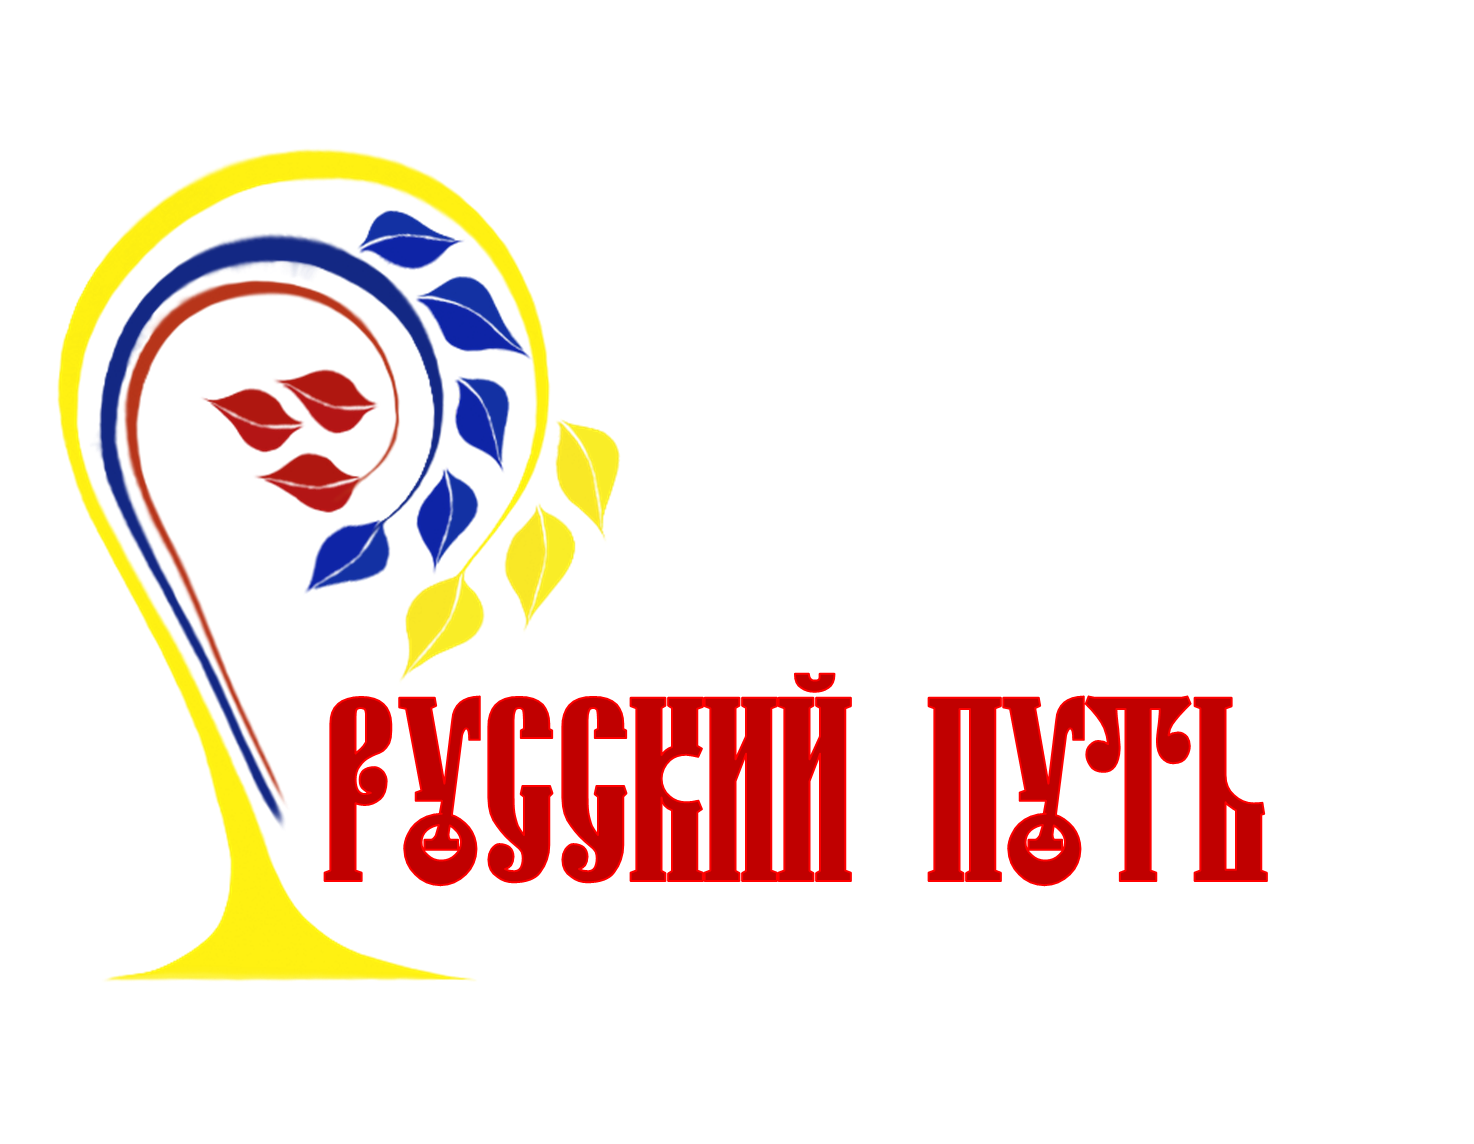 Логотип россия 24 на прозрачном фоне